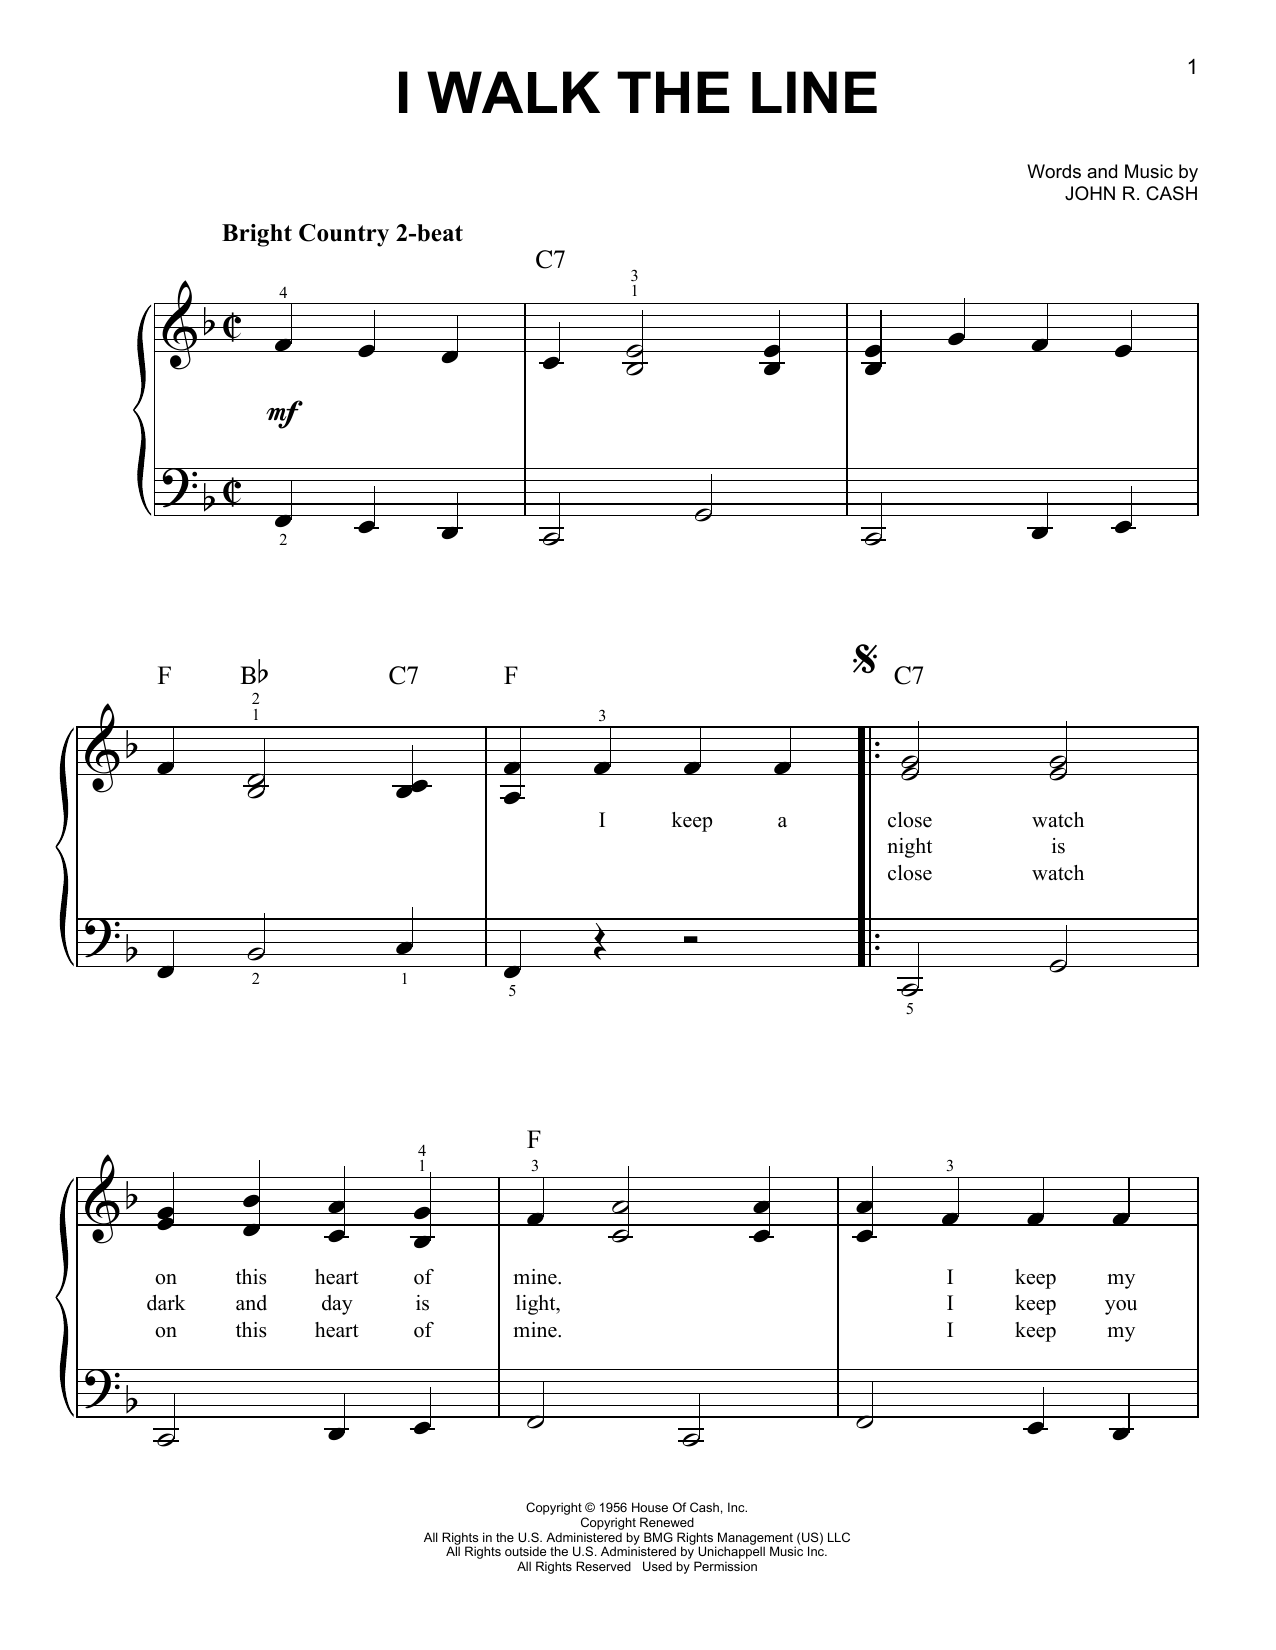 Johnny Cash I Walk The Line Sheet Music Notes & Chords for Ukulele Lyrics & Chords - Download or Print PDF